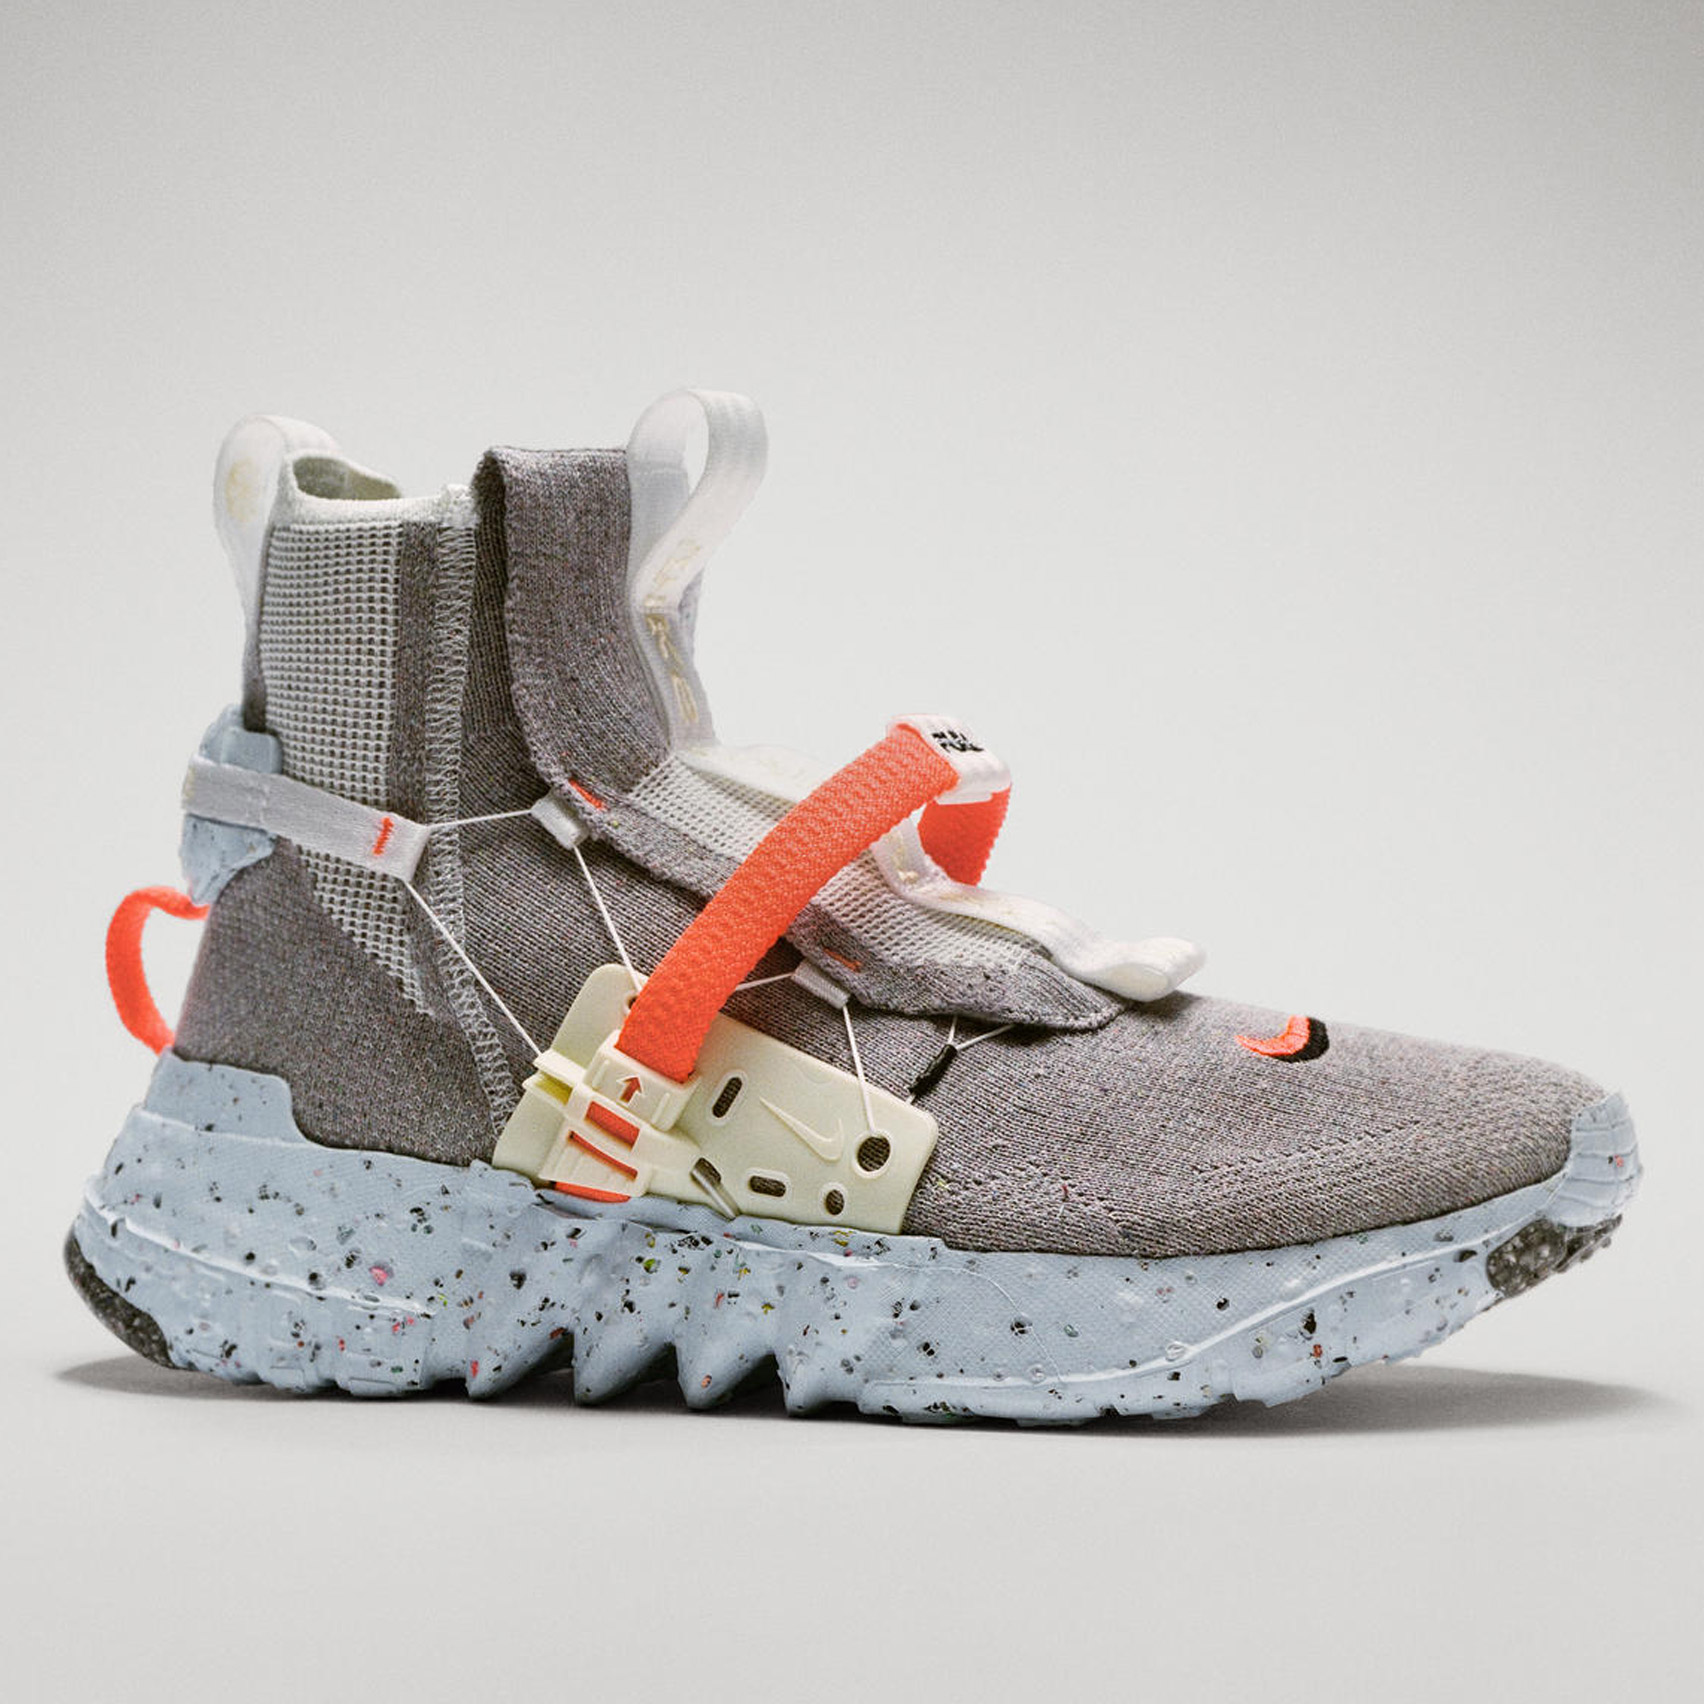 ondersteboven Ik was verrast Nachtvlek Nike releases Space Hippie footwear made from recycled factory waste